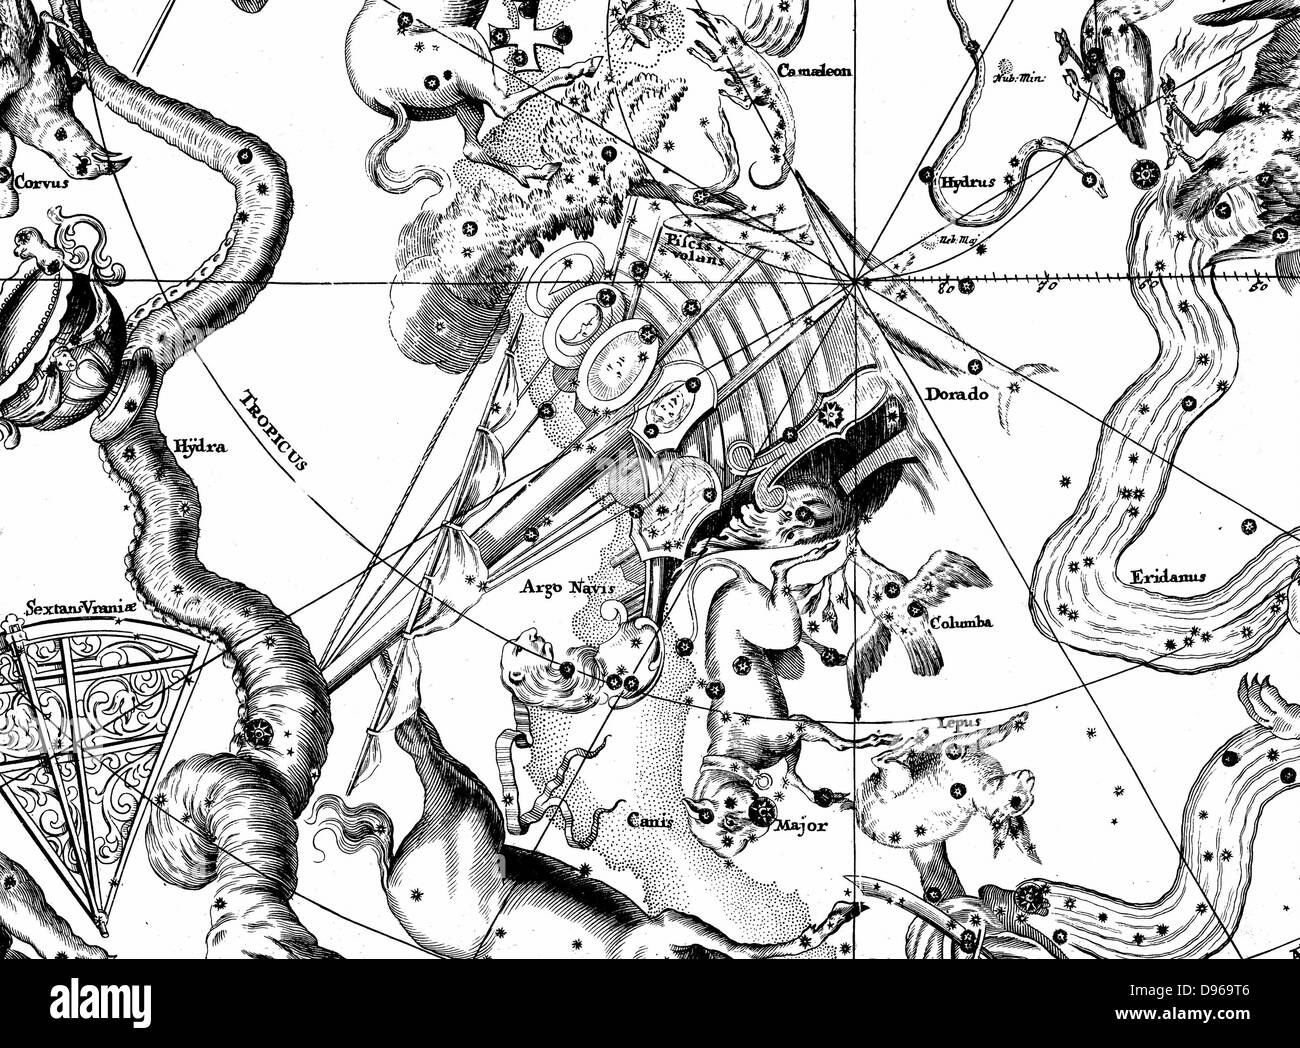 Le sud de constellation d'Argo Navis de John Gabriel Doppelmayer 'Atlas Coelestis' 1742 de Nuremberg. La gravure sur cuivre Banque D'Images